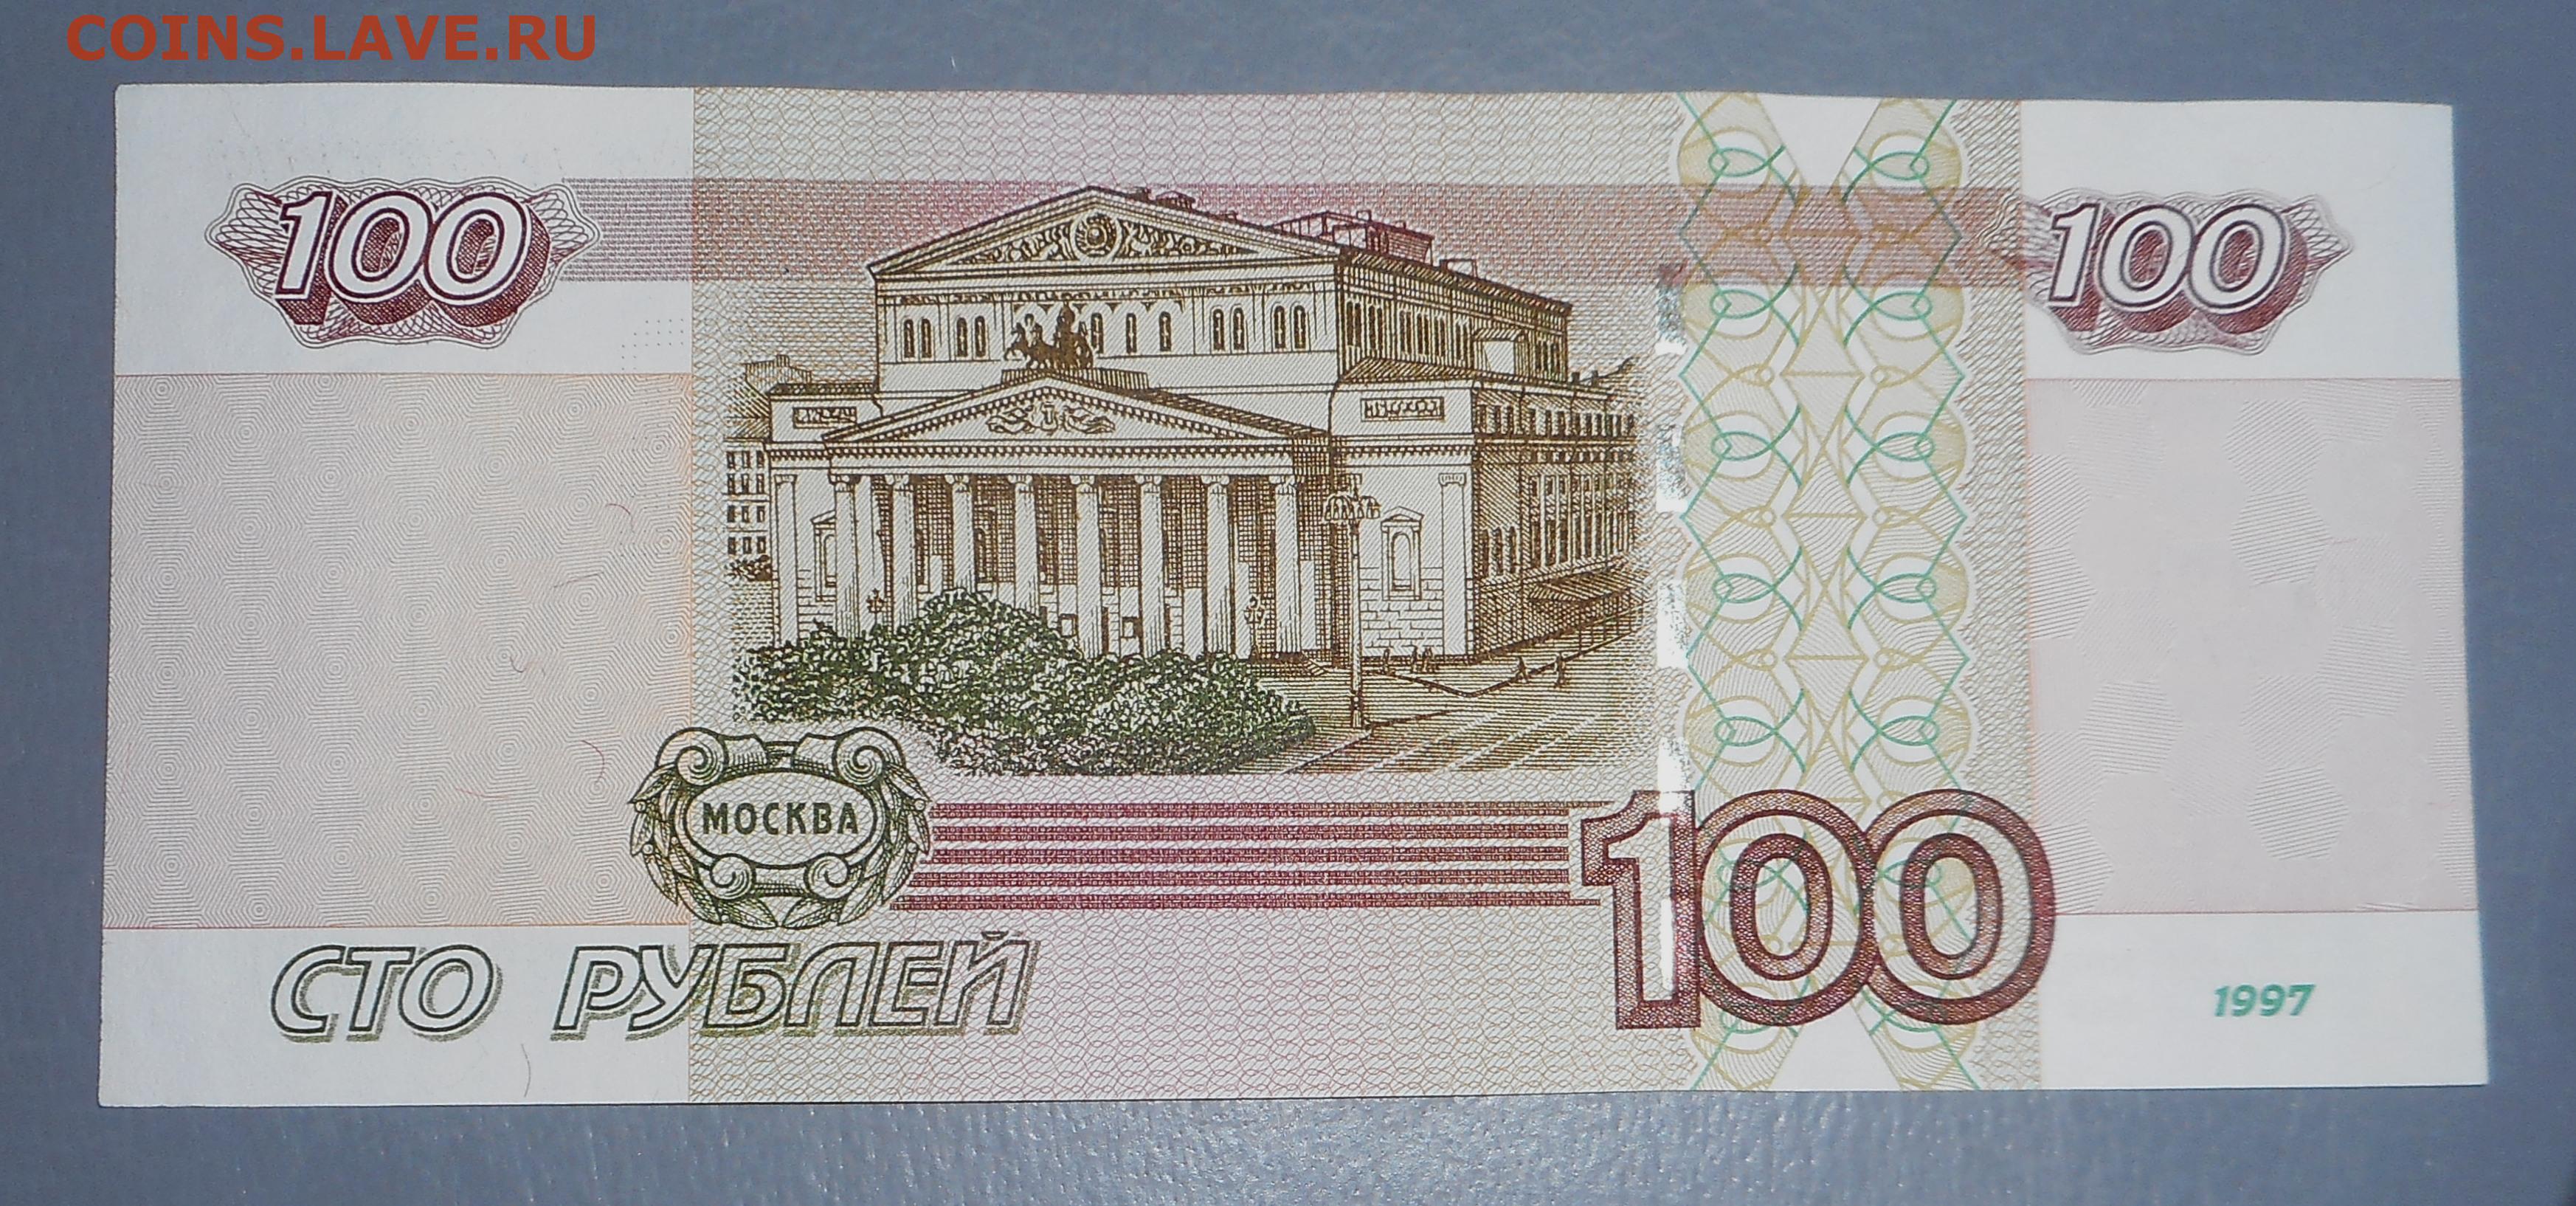 50 300 рублей. Купюра 100000 рублей 1995 года. 100 Рублей 1995 года. СТО рублей купюра 1995 года. Купюра 100 рублей.